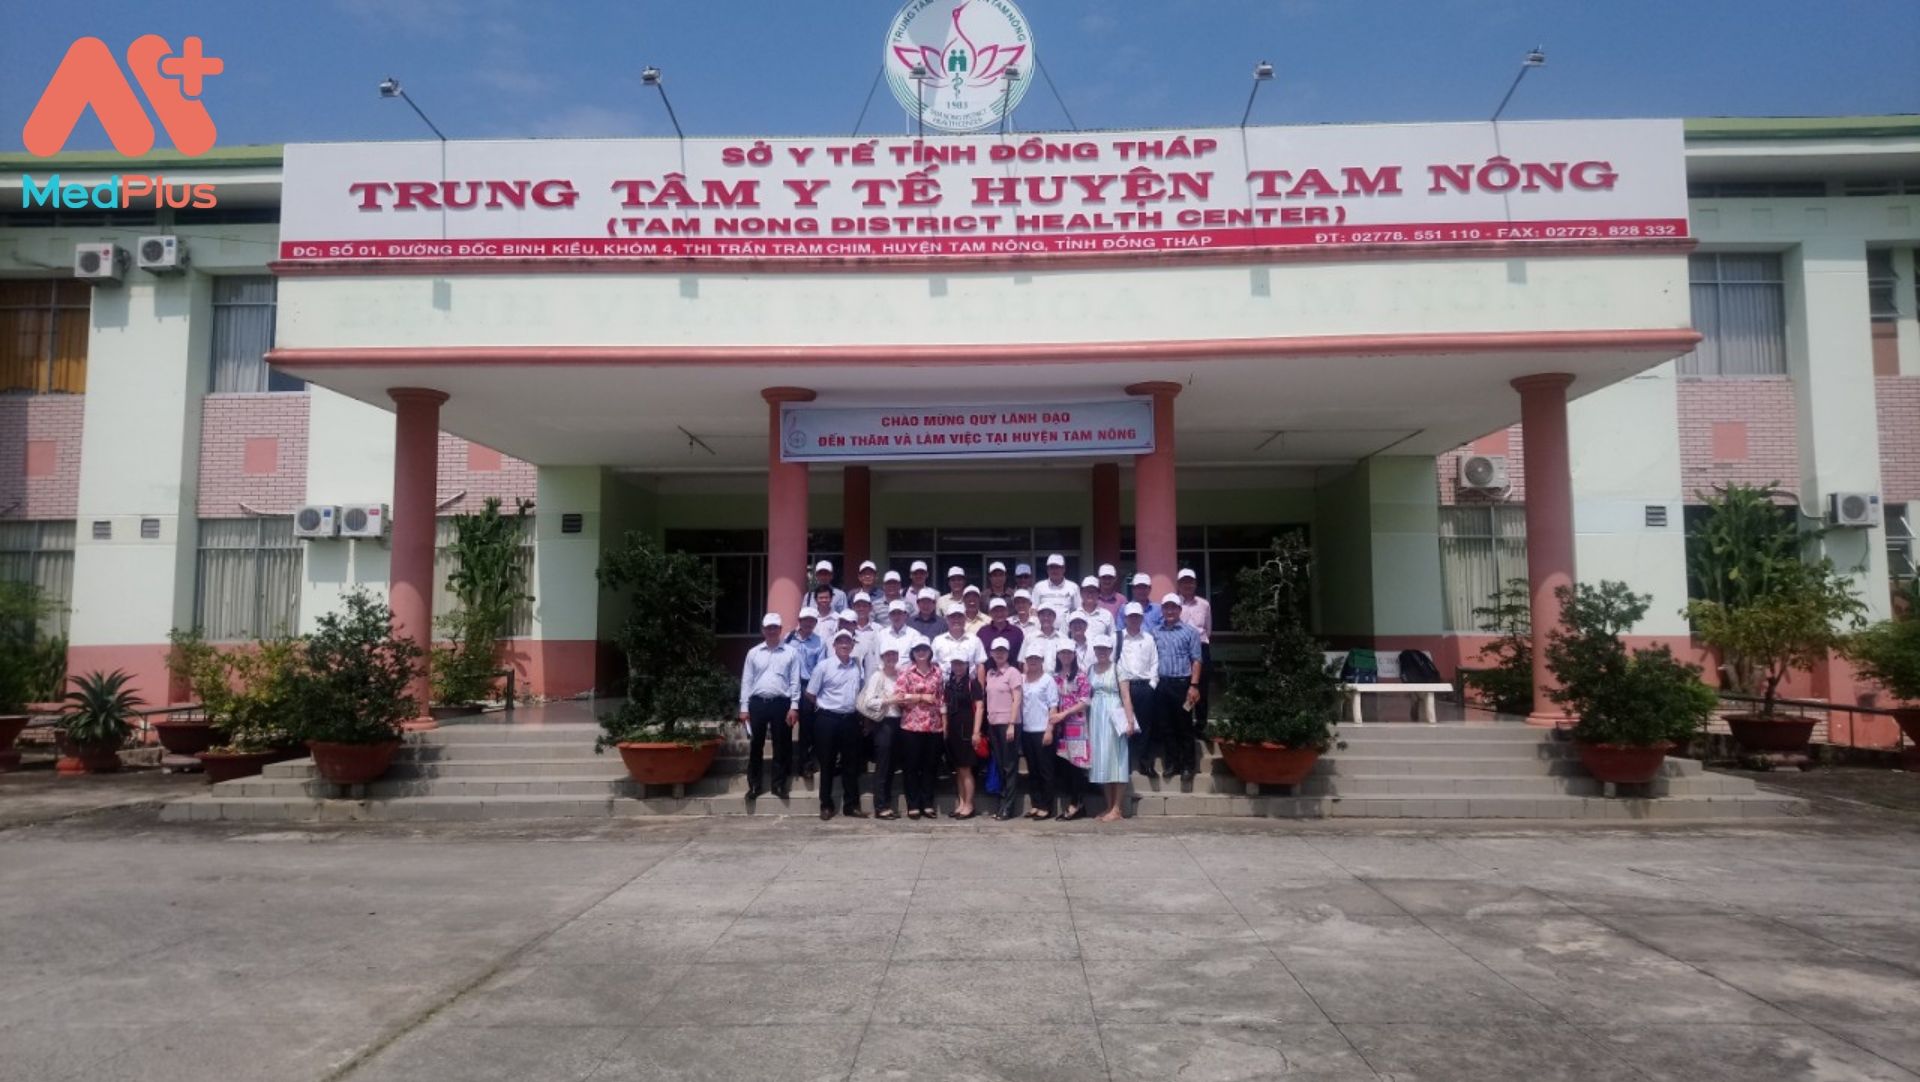 Trung tâm y tế huyện Tam Nông